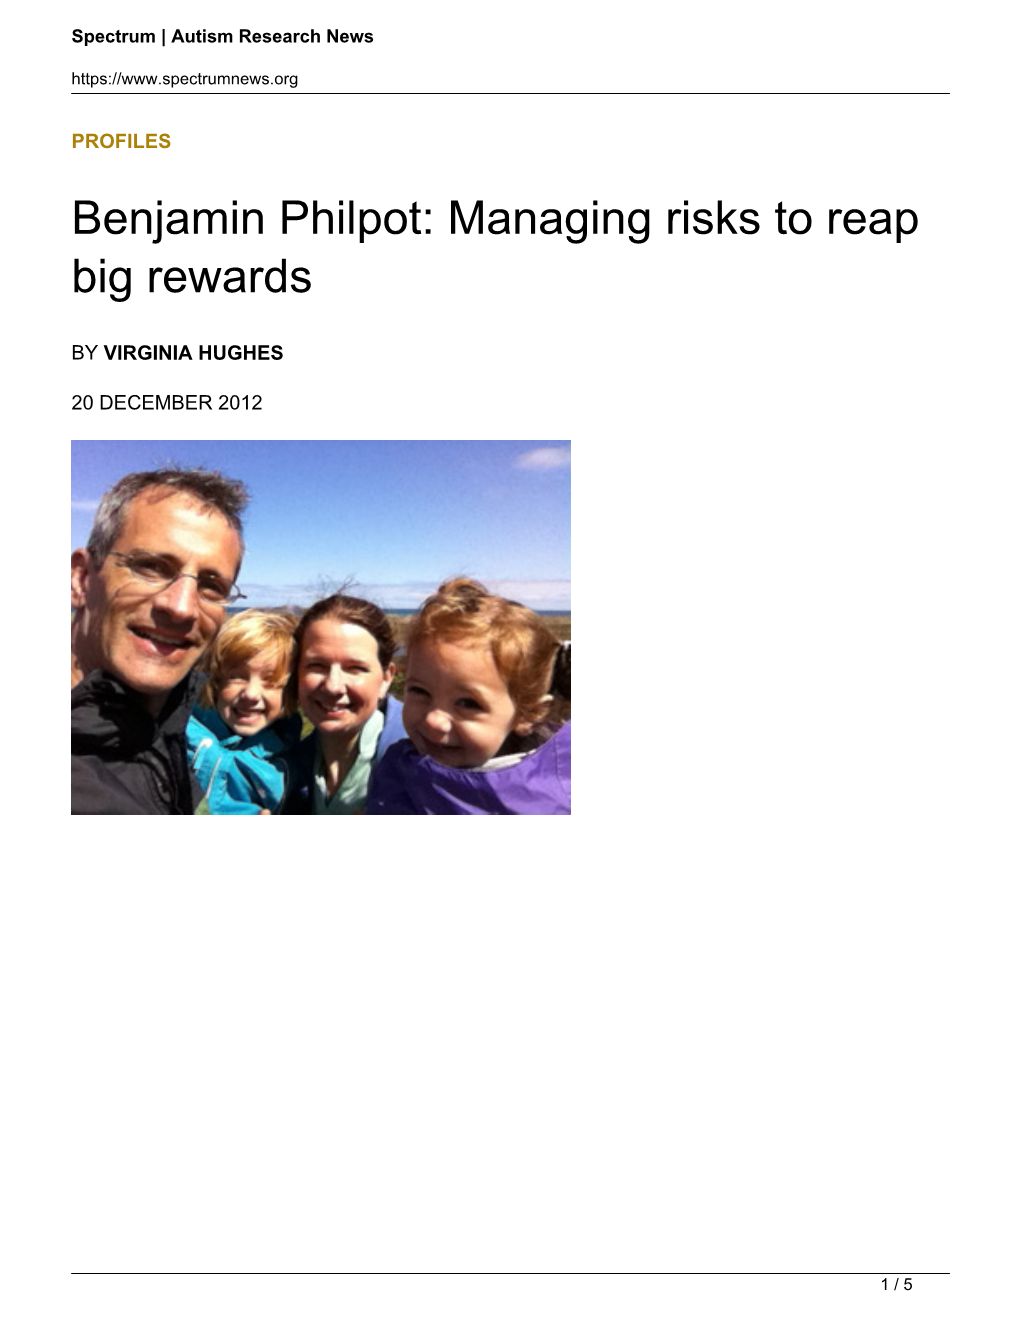 Benjamin Philpot: Managing Risks to Reap Big Rewards